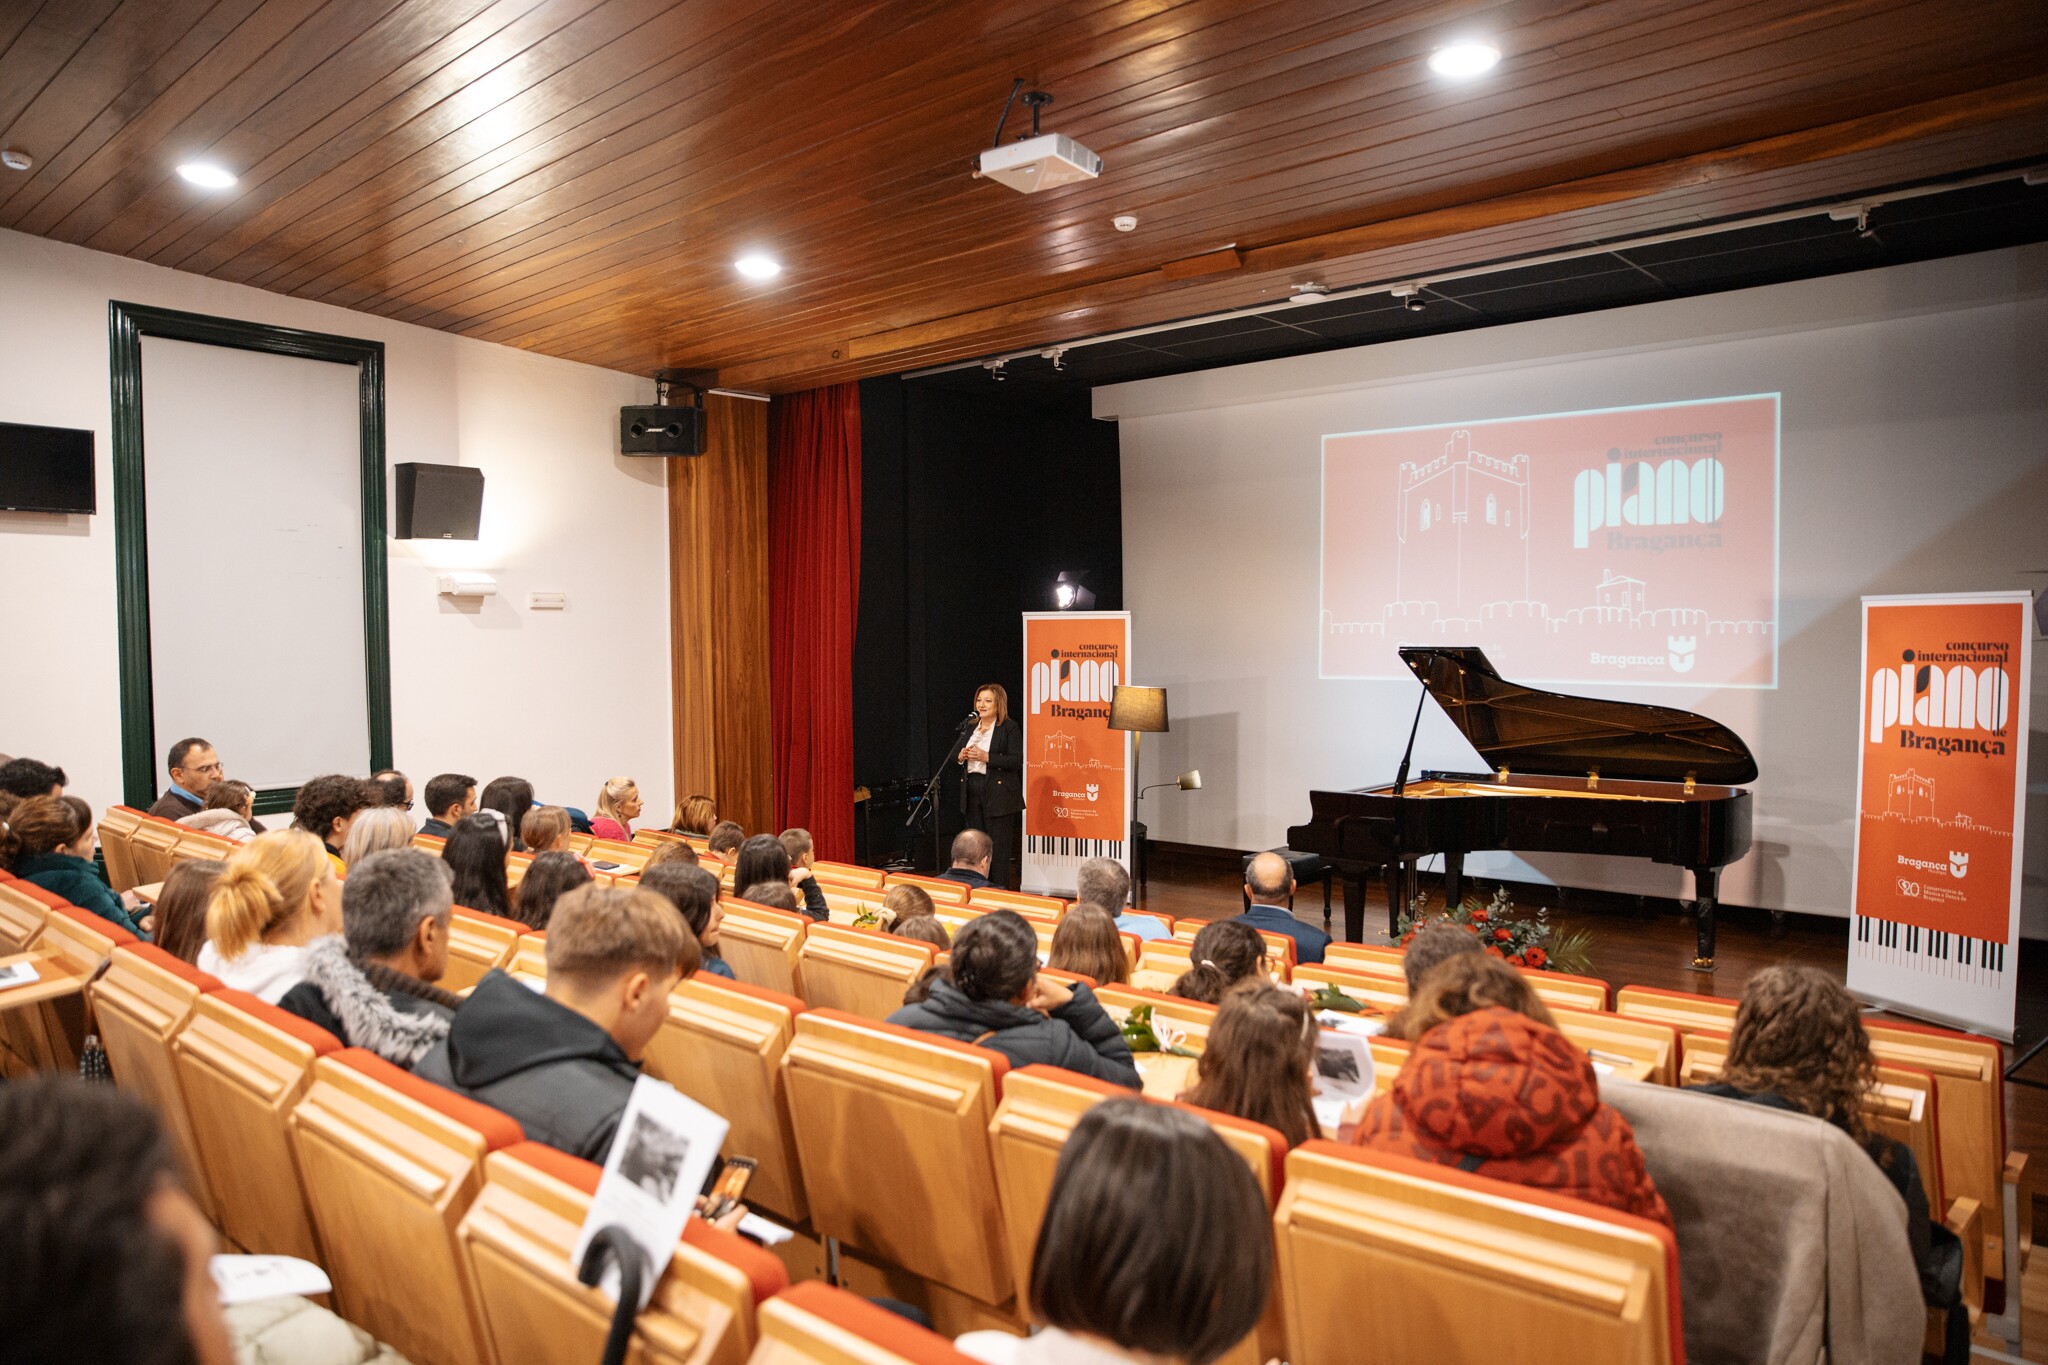 1.º Concurso Internacional de Piano de Bragança